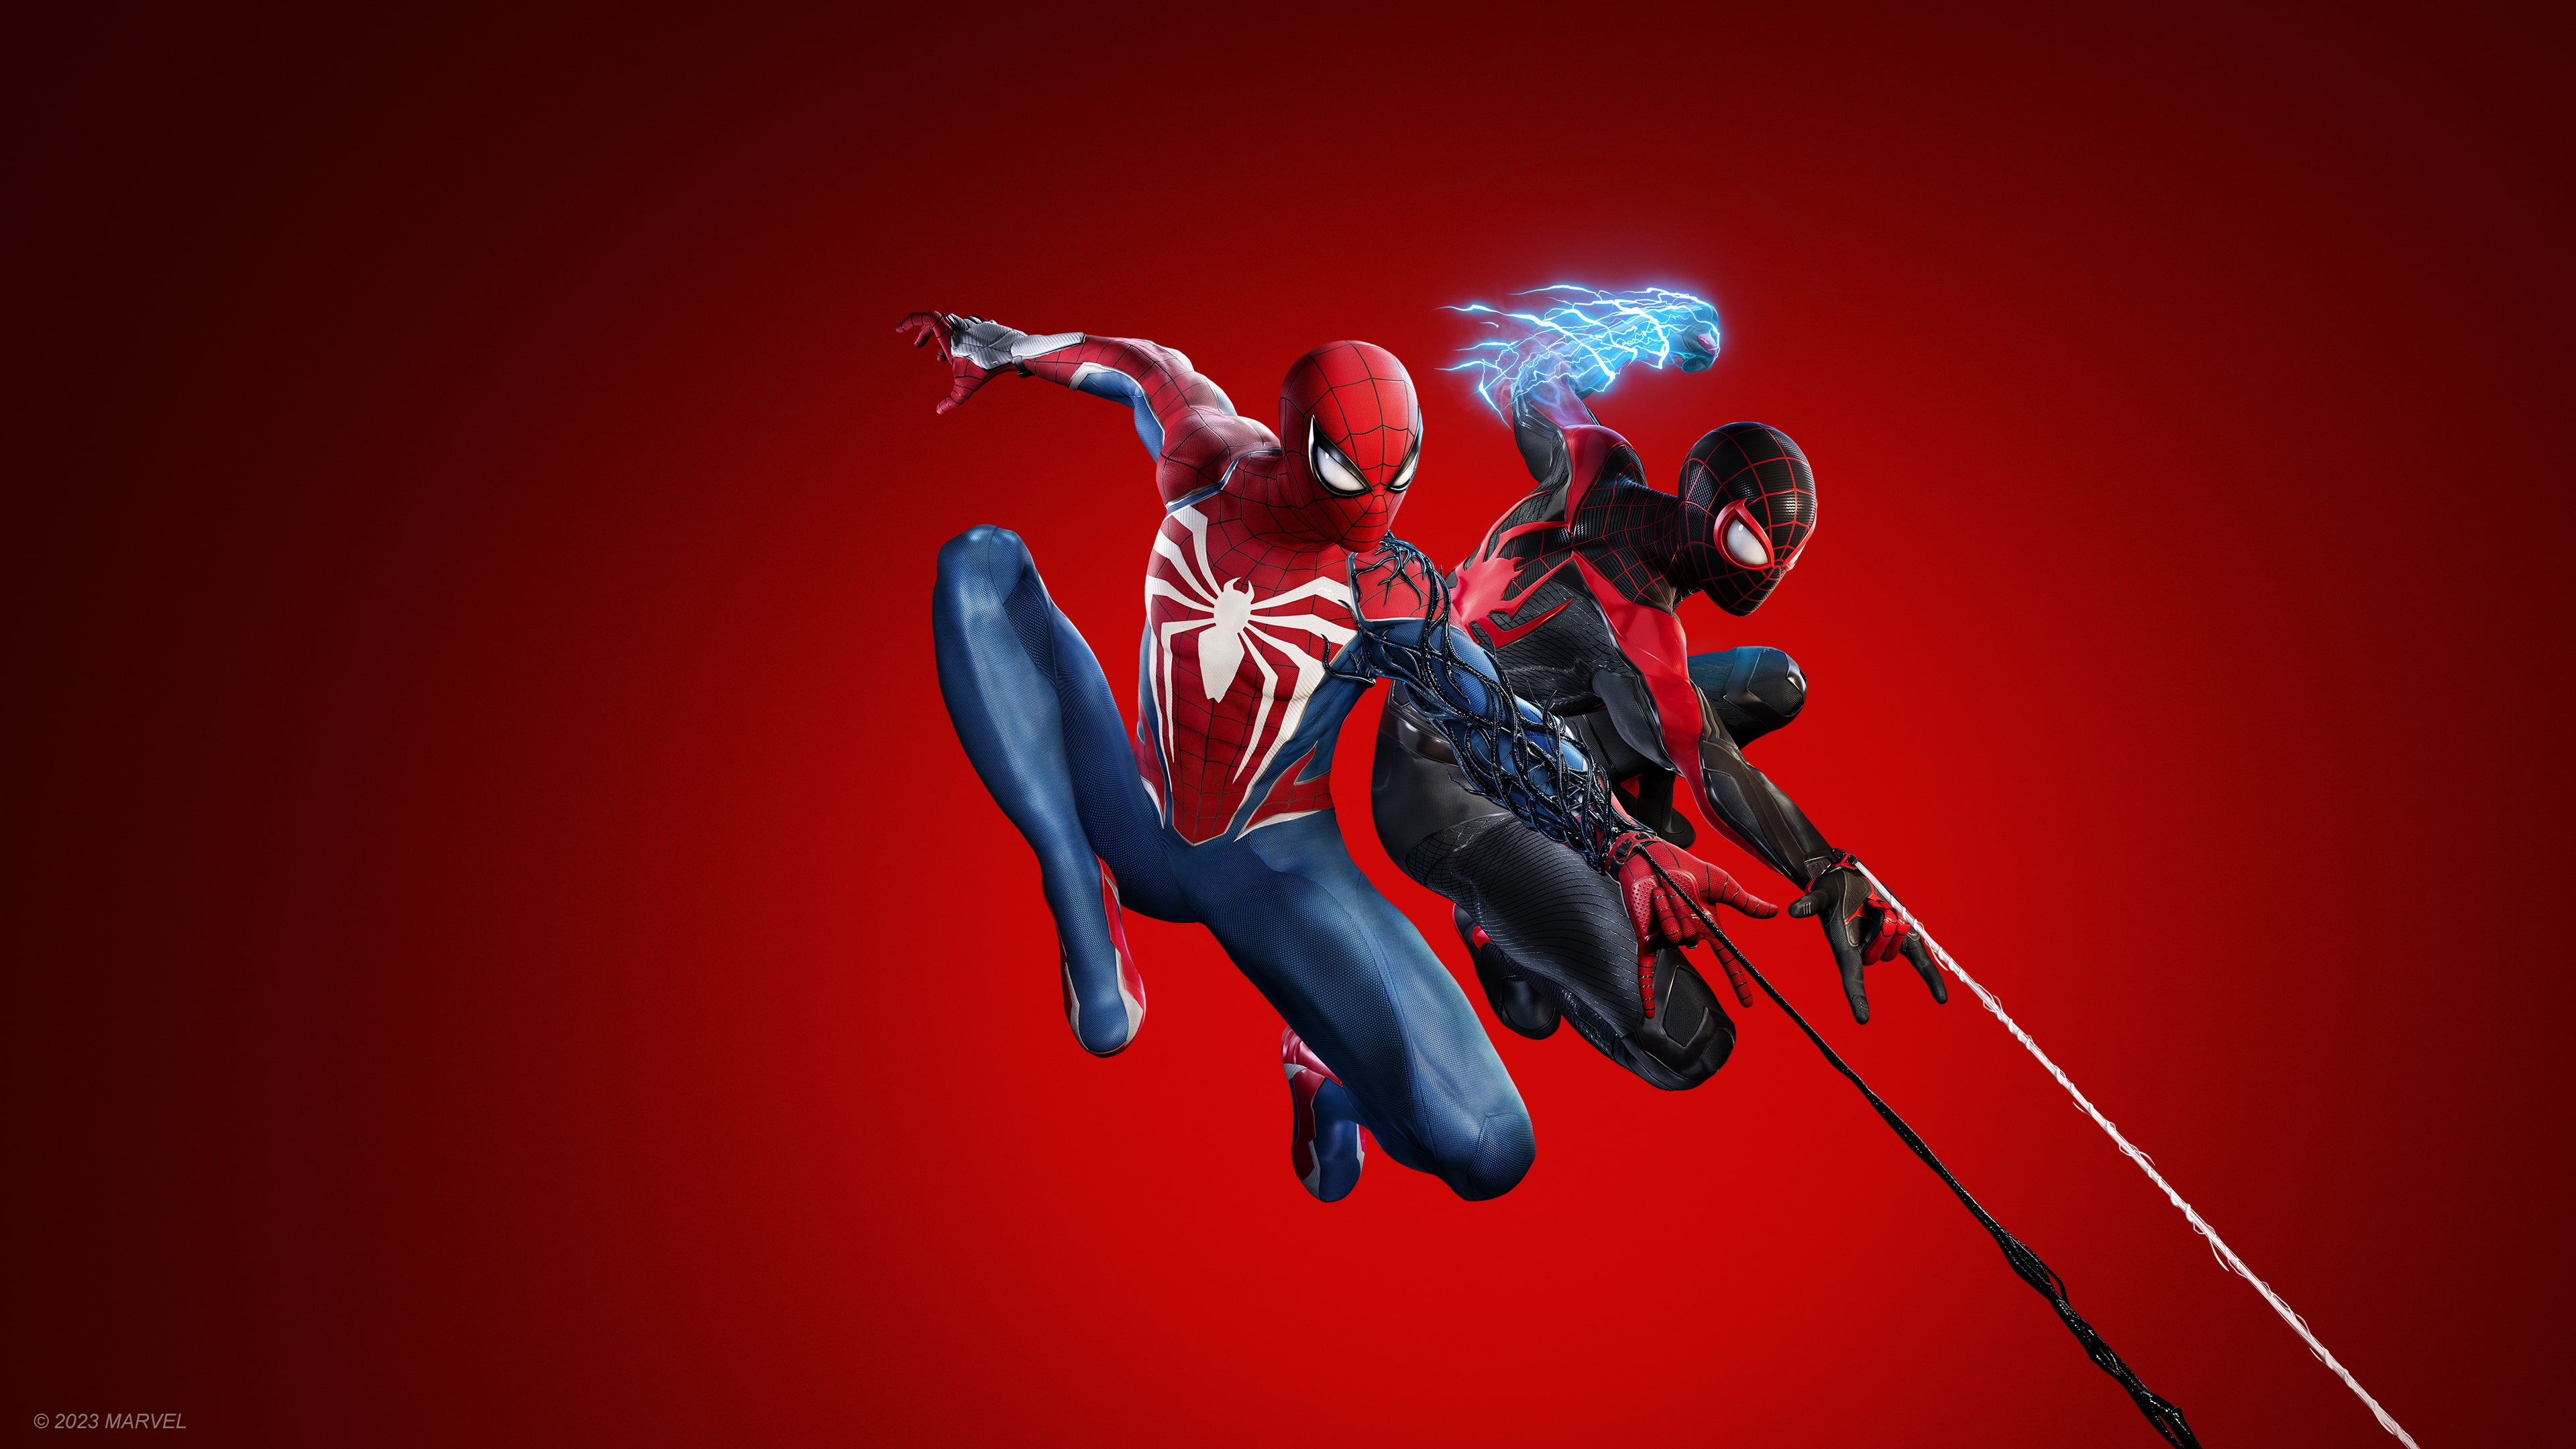 Jogo Marvel's Spider-man 2 Edição De Lançamento - Ps5